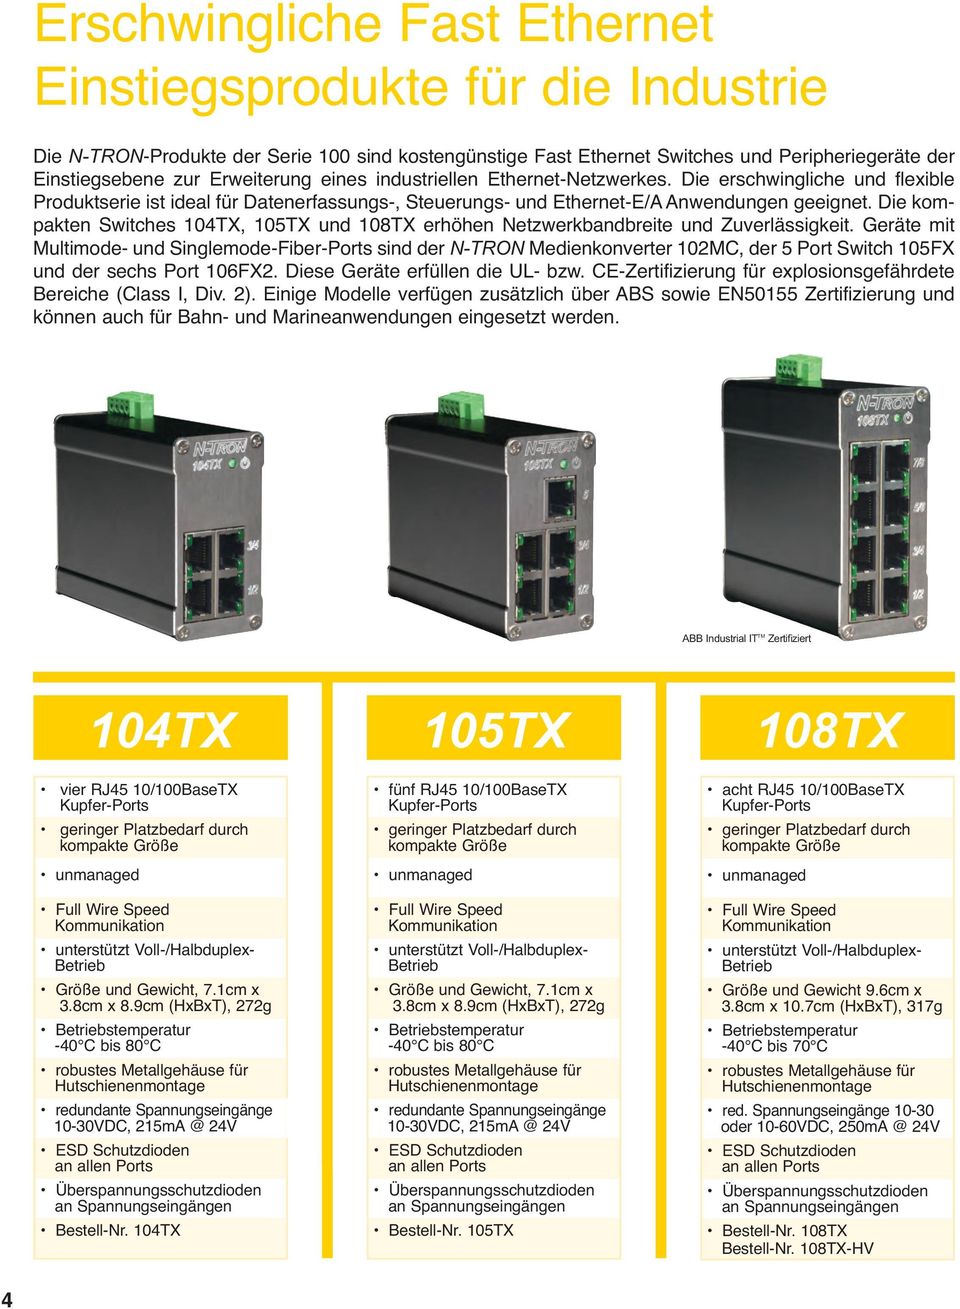 Die kompakten Switches 104TX, 105TX und 108TX erhöhen Netzwerkbandbreite und Zuverlässigkeit.